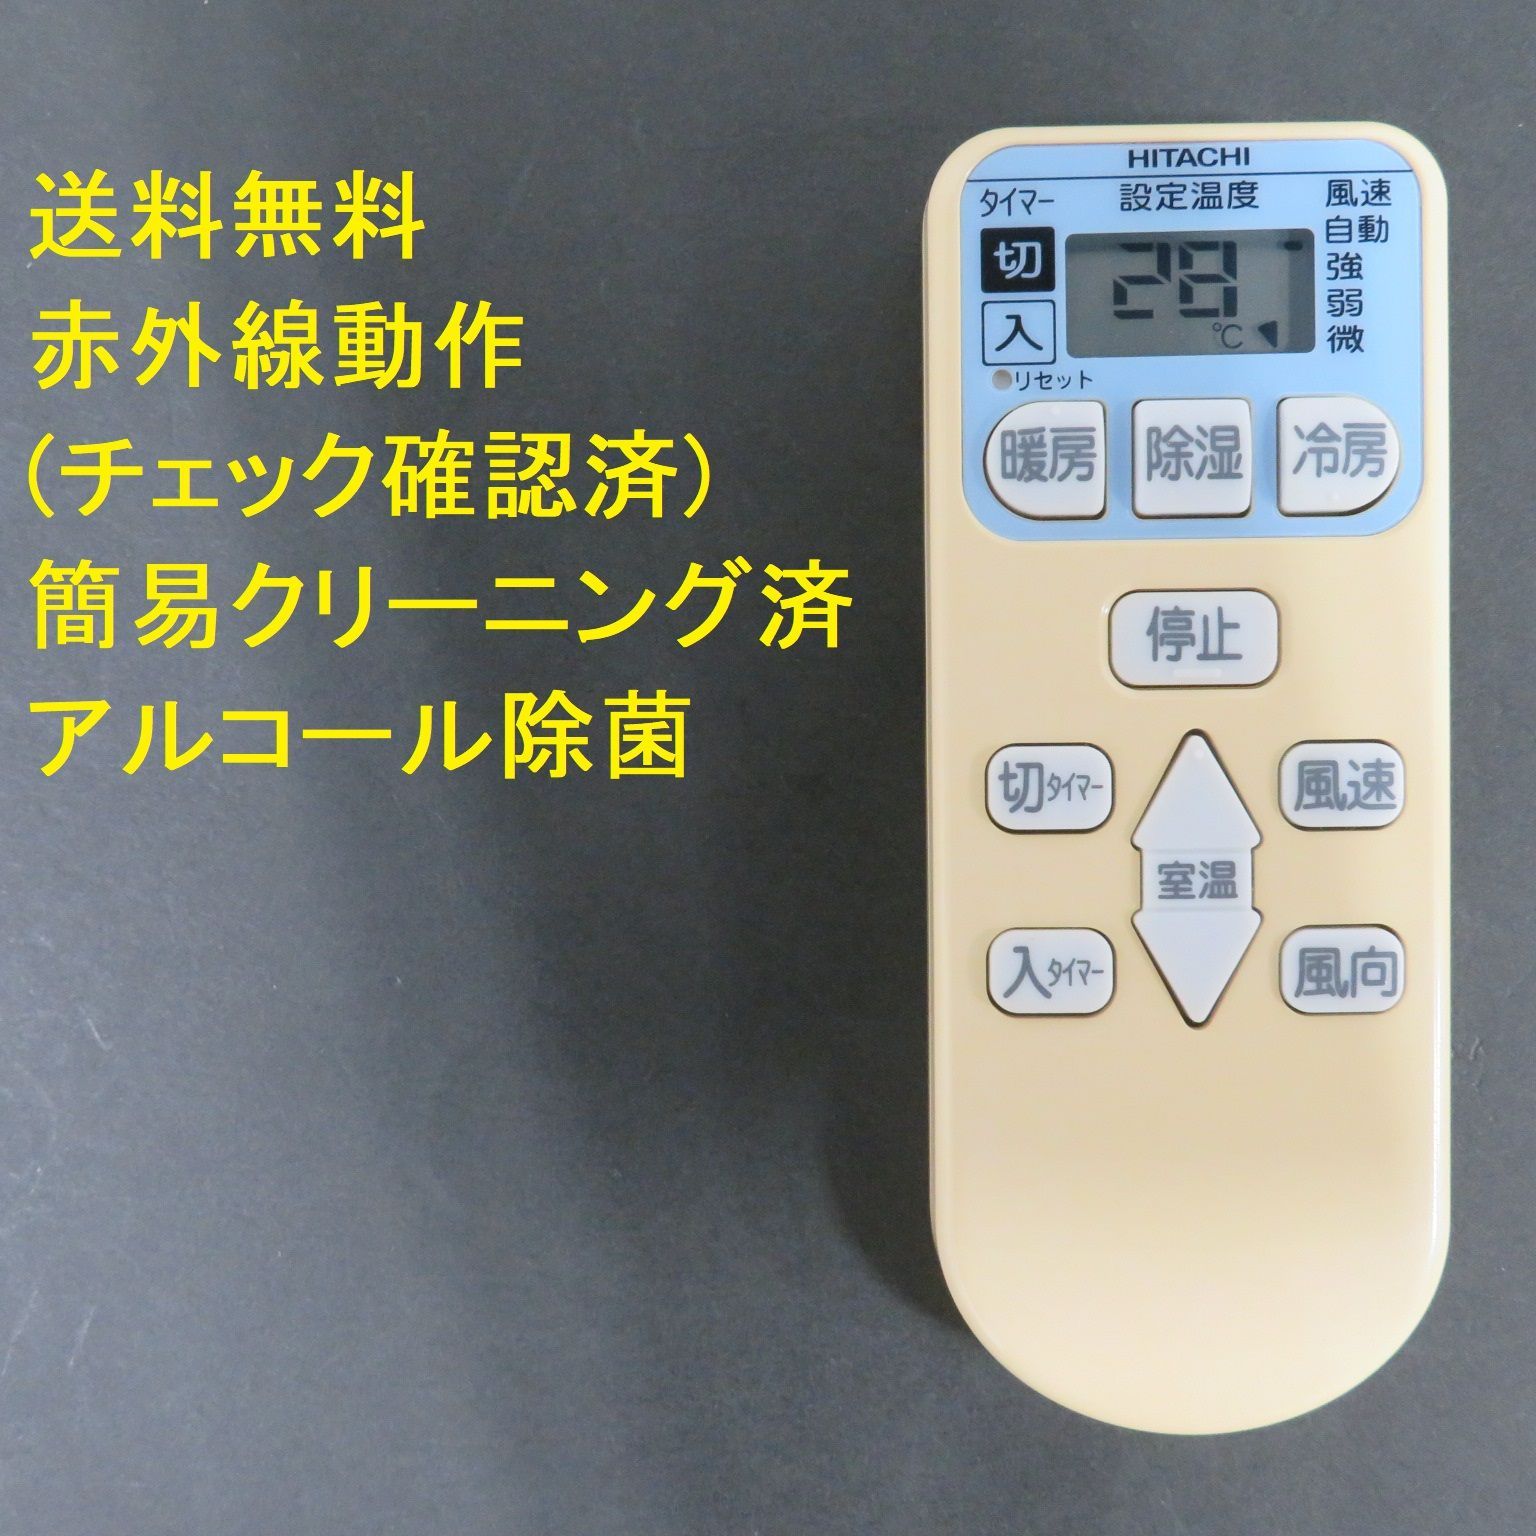 3279☆日立(HITACHI) エアコンリモコンRAR-4L1|mercari商品代購│mercariメルカリ官方合作夥伴-跨買 TOKUKAI